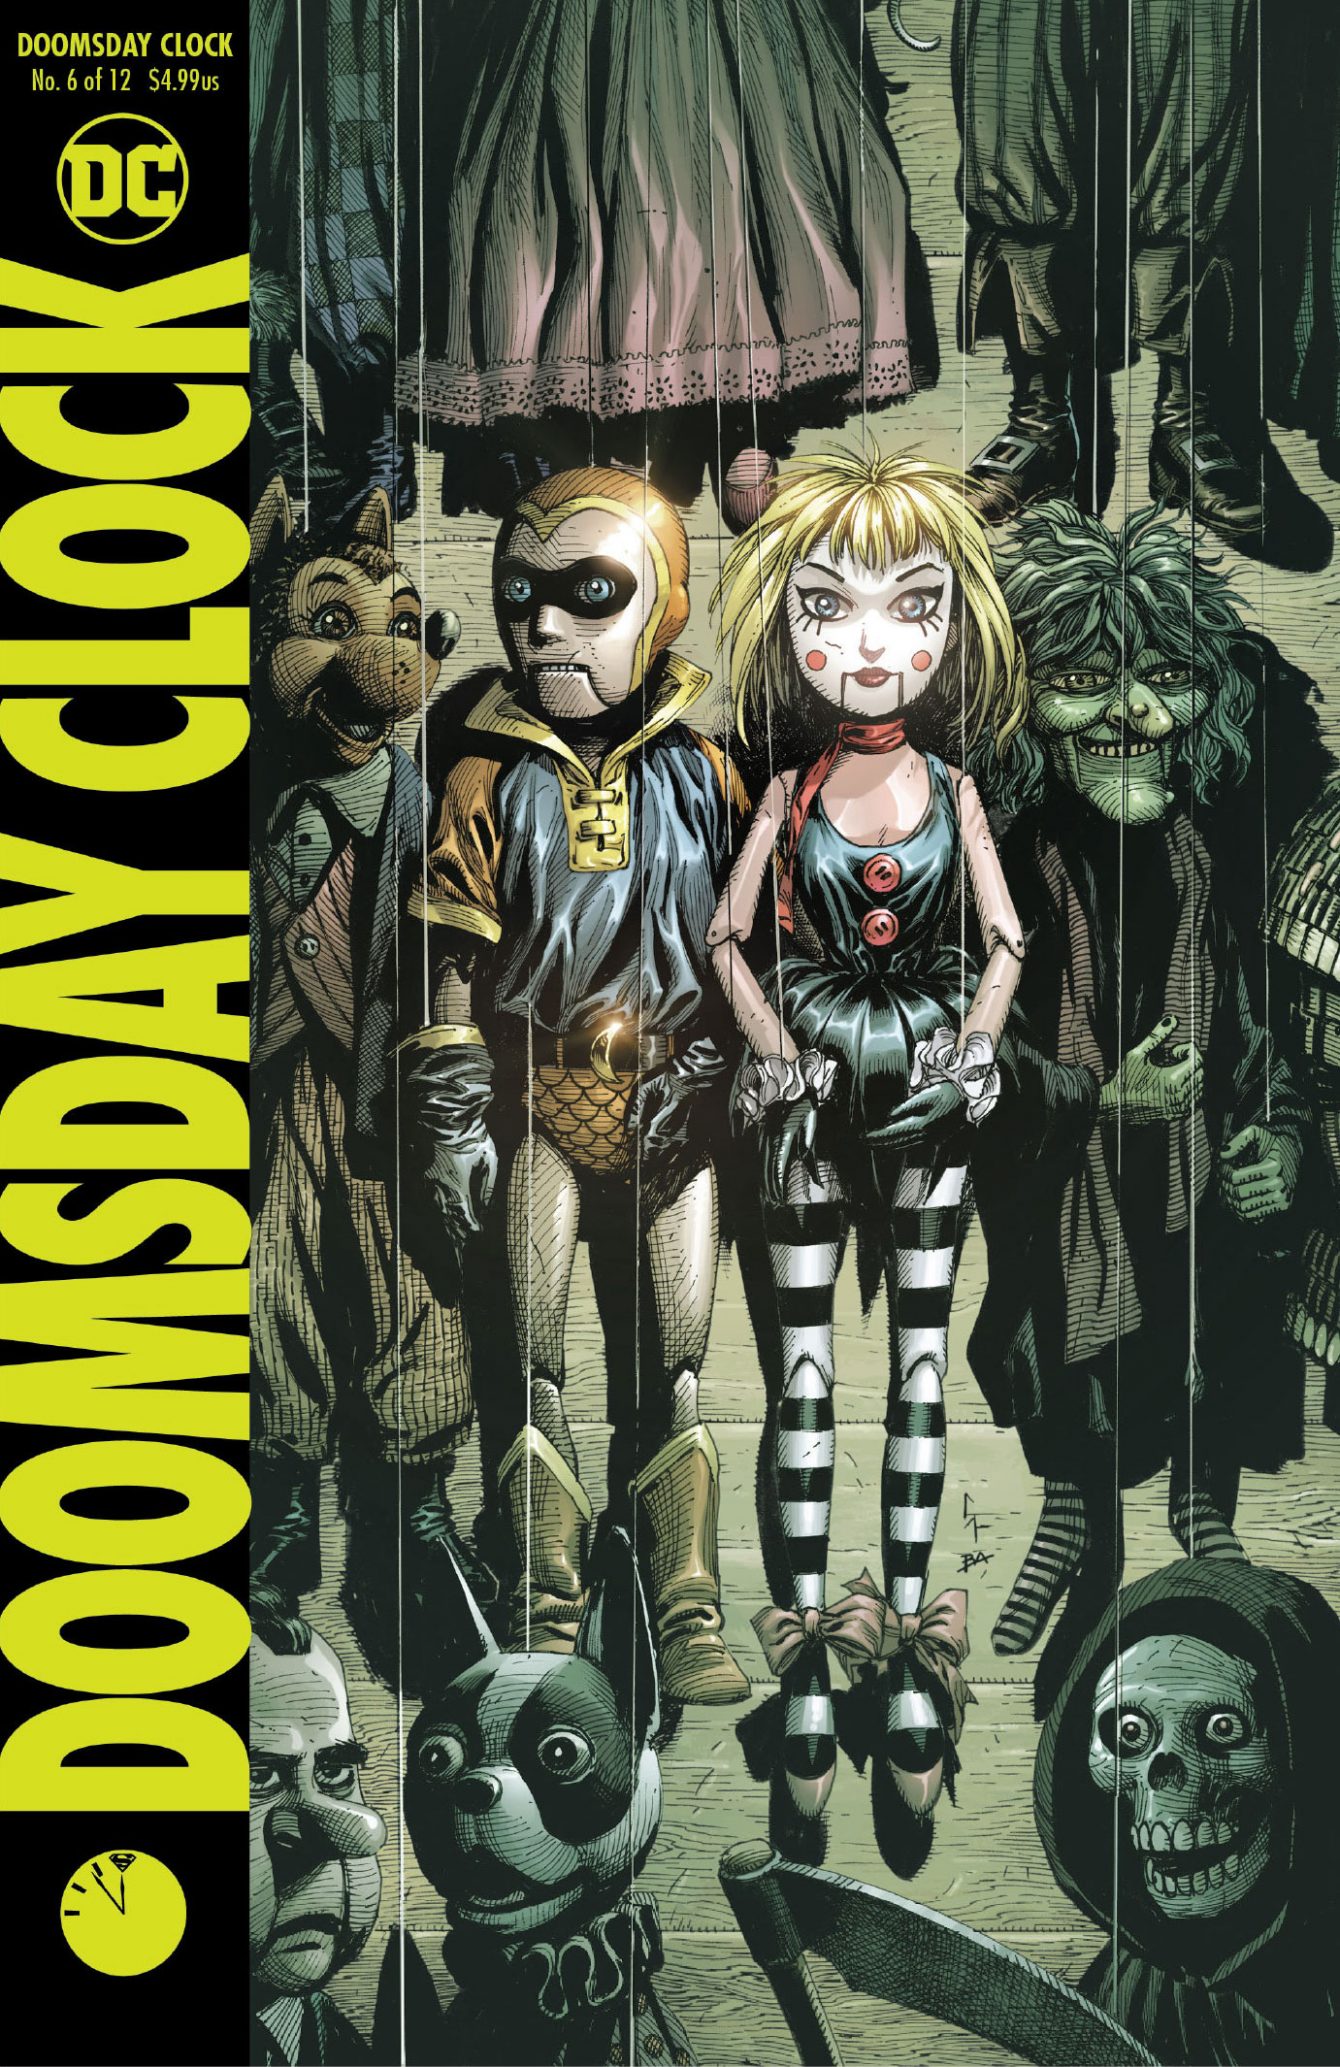 Doomsday Clock #6 Variant Cover - DC Comics